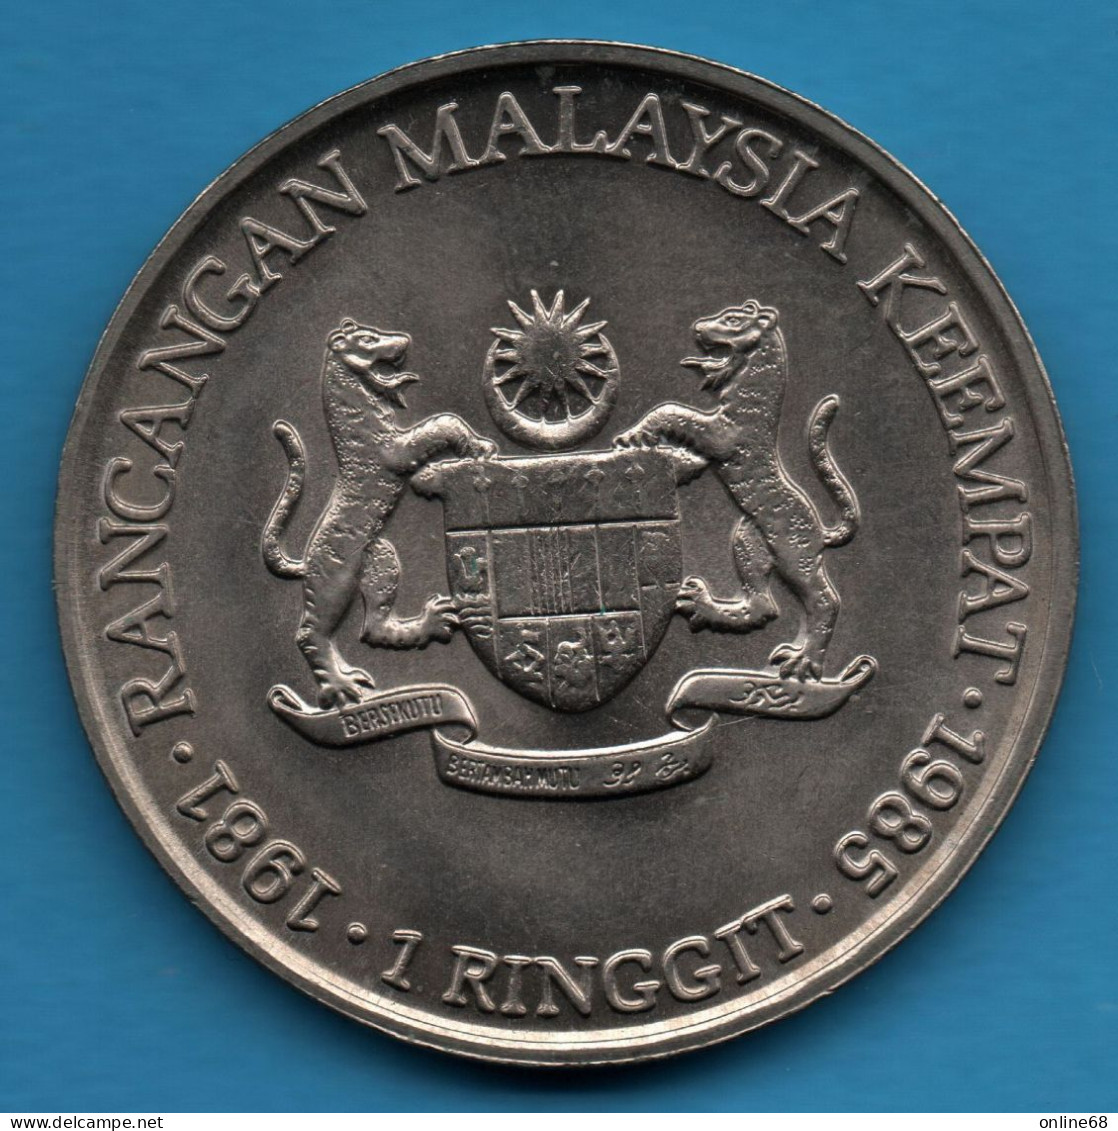 MALAYSIA 1 RINGGIT 1981 - 1985 KM# 29 4th Malaysia Plan TUN HUSSEIN ONN - Malaysia